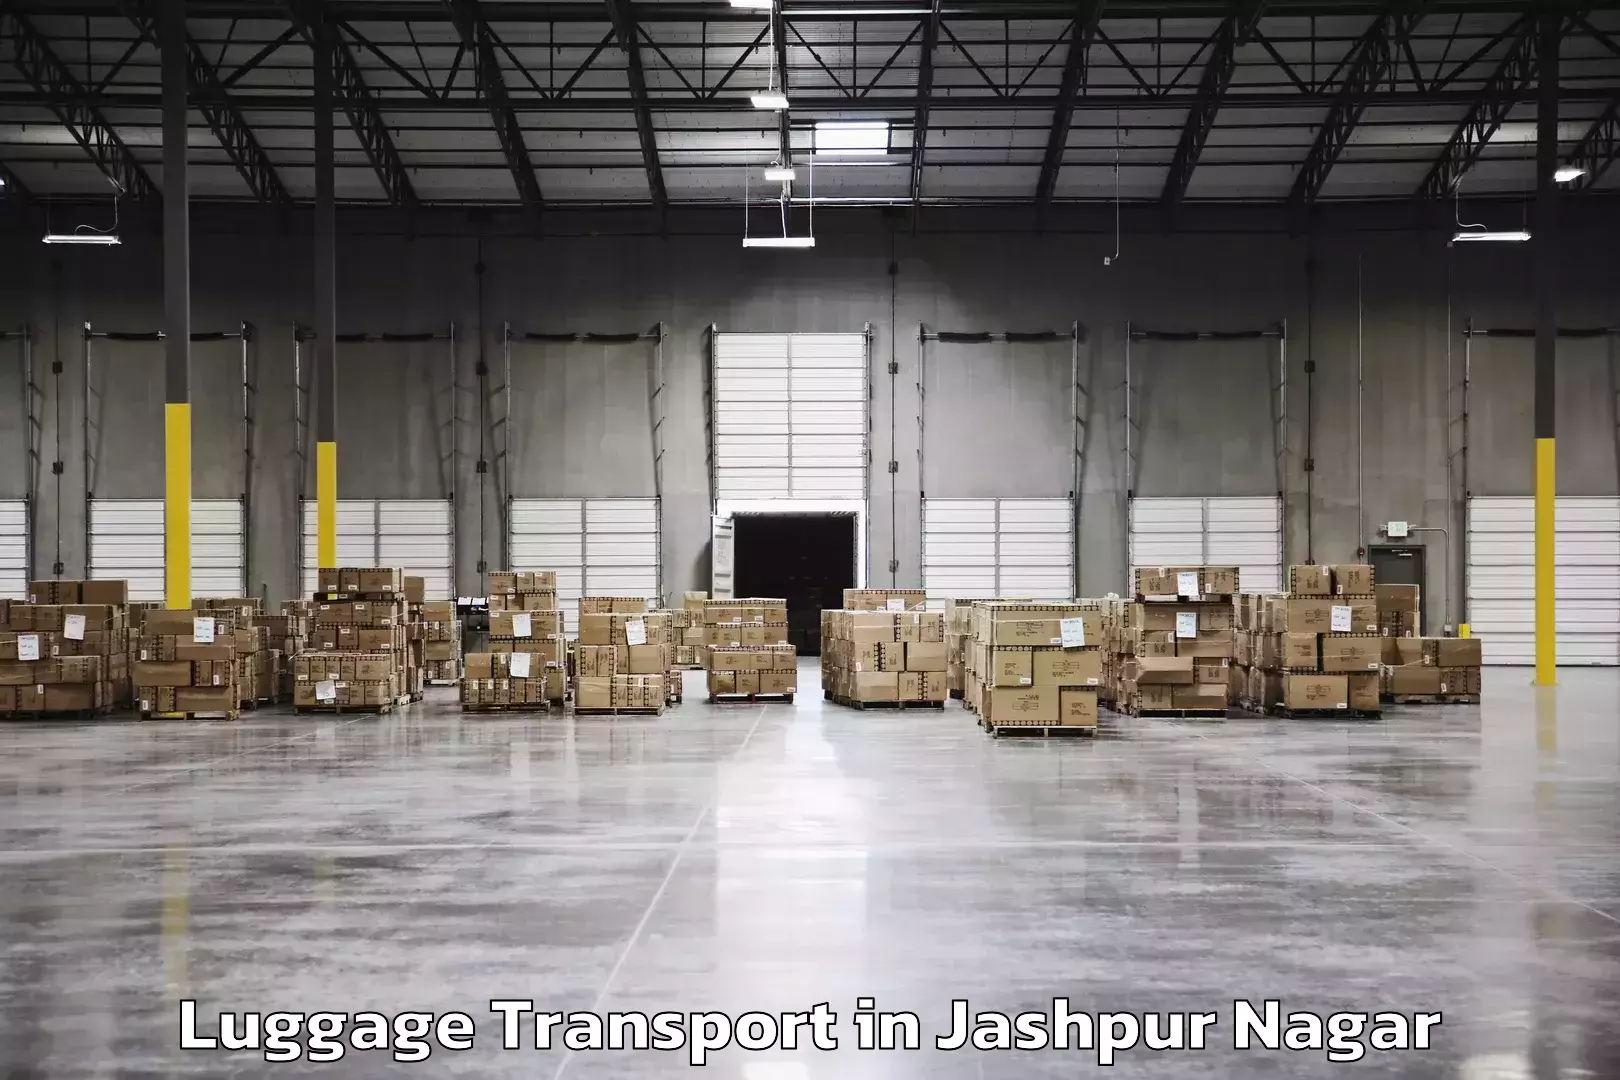 Luggage transport schedule in Jashpur Nagar